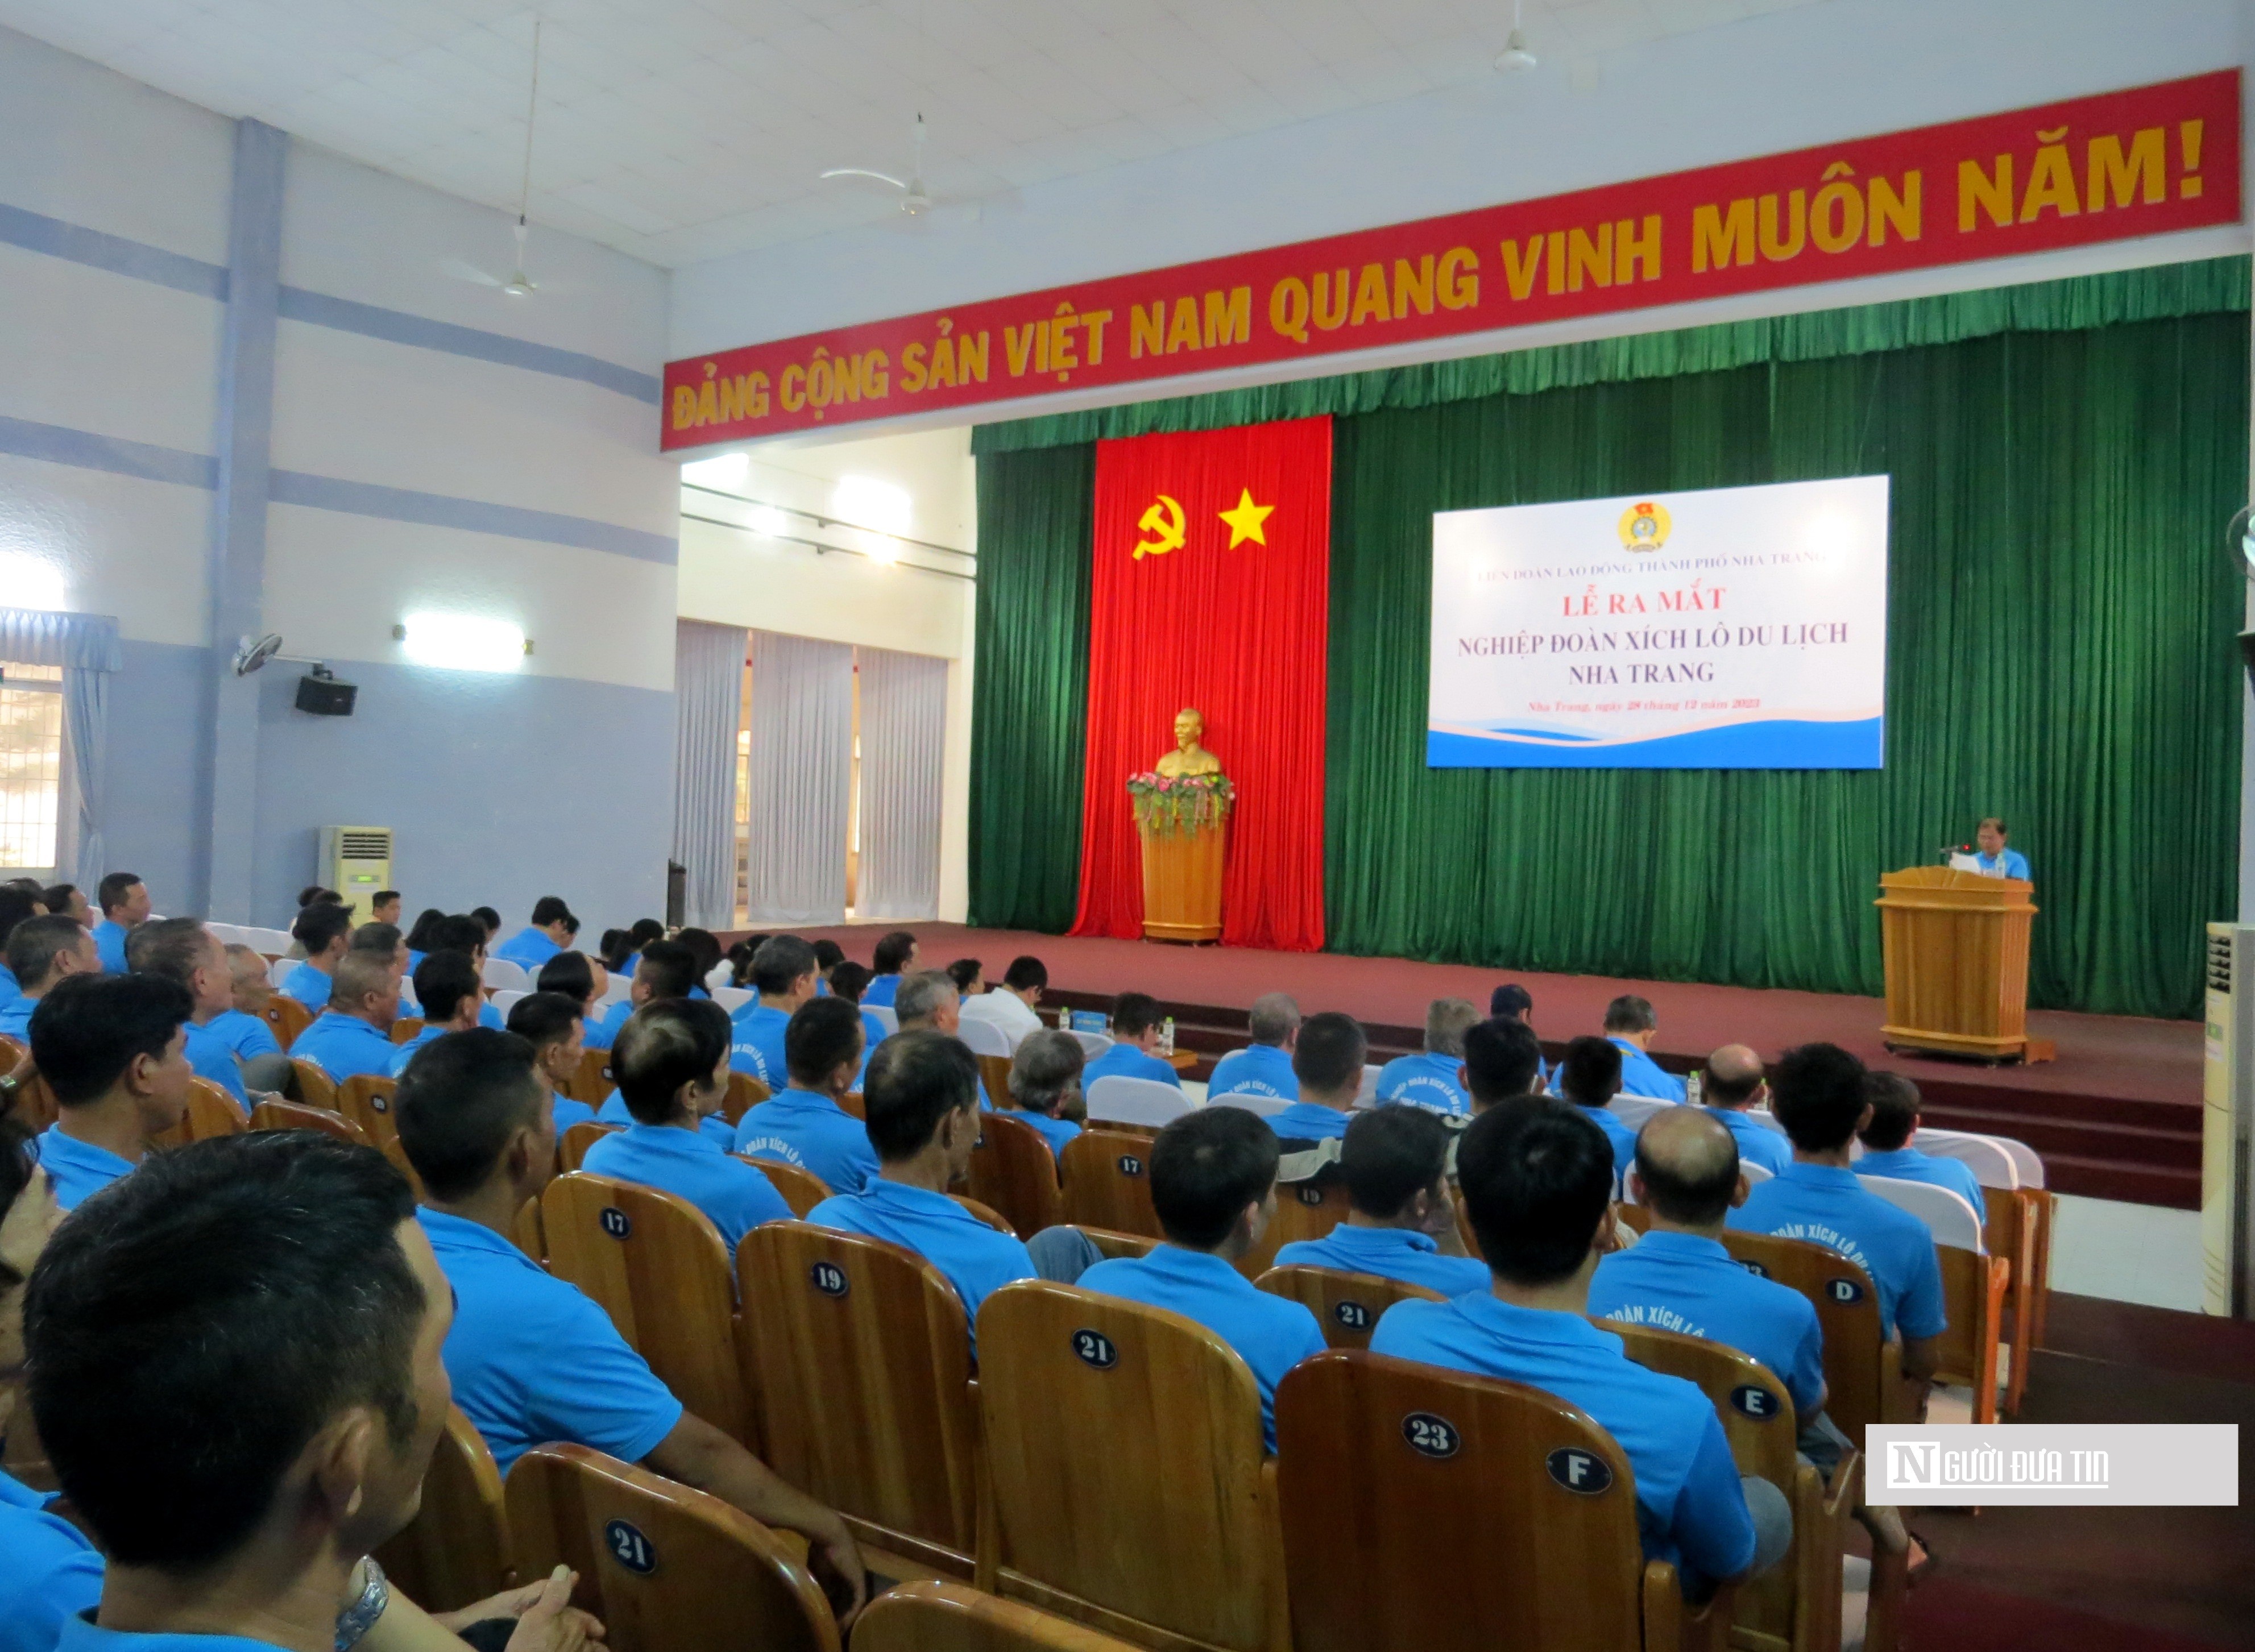 Sự kiện - Khánh Hòa: Ra mắt Nghiệp đoàn xích lô du lịch Nha Trang (Hình 2).